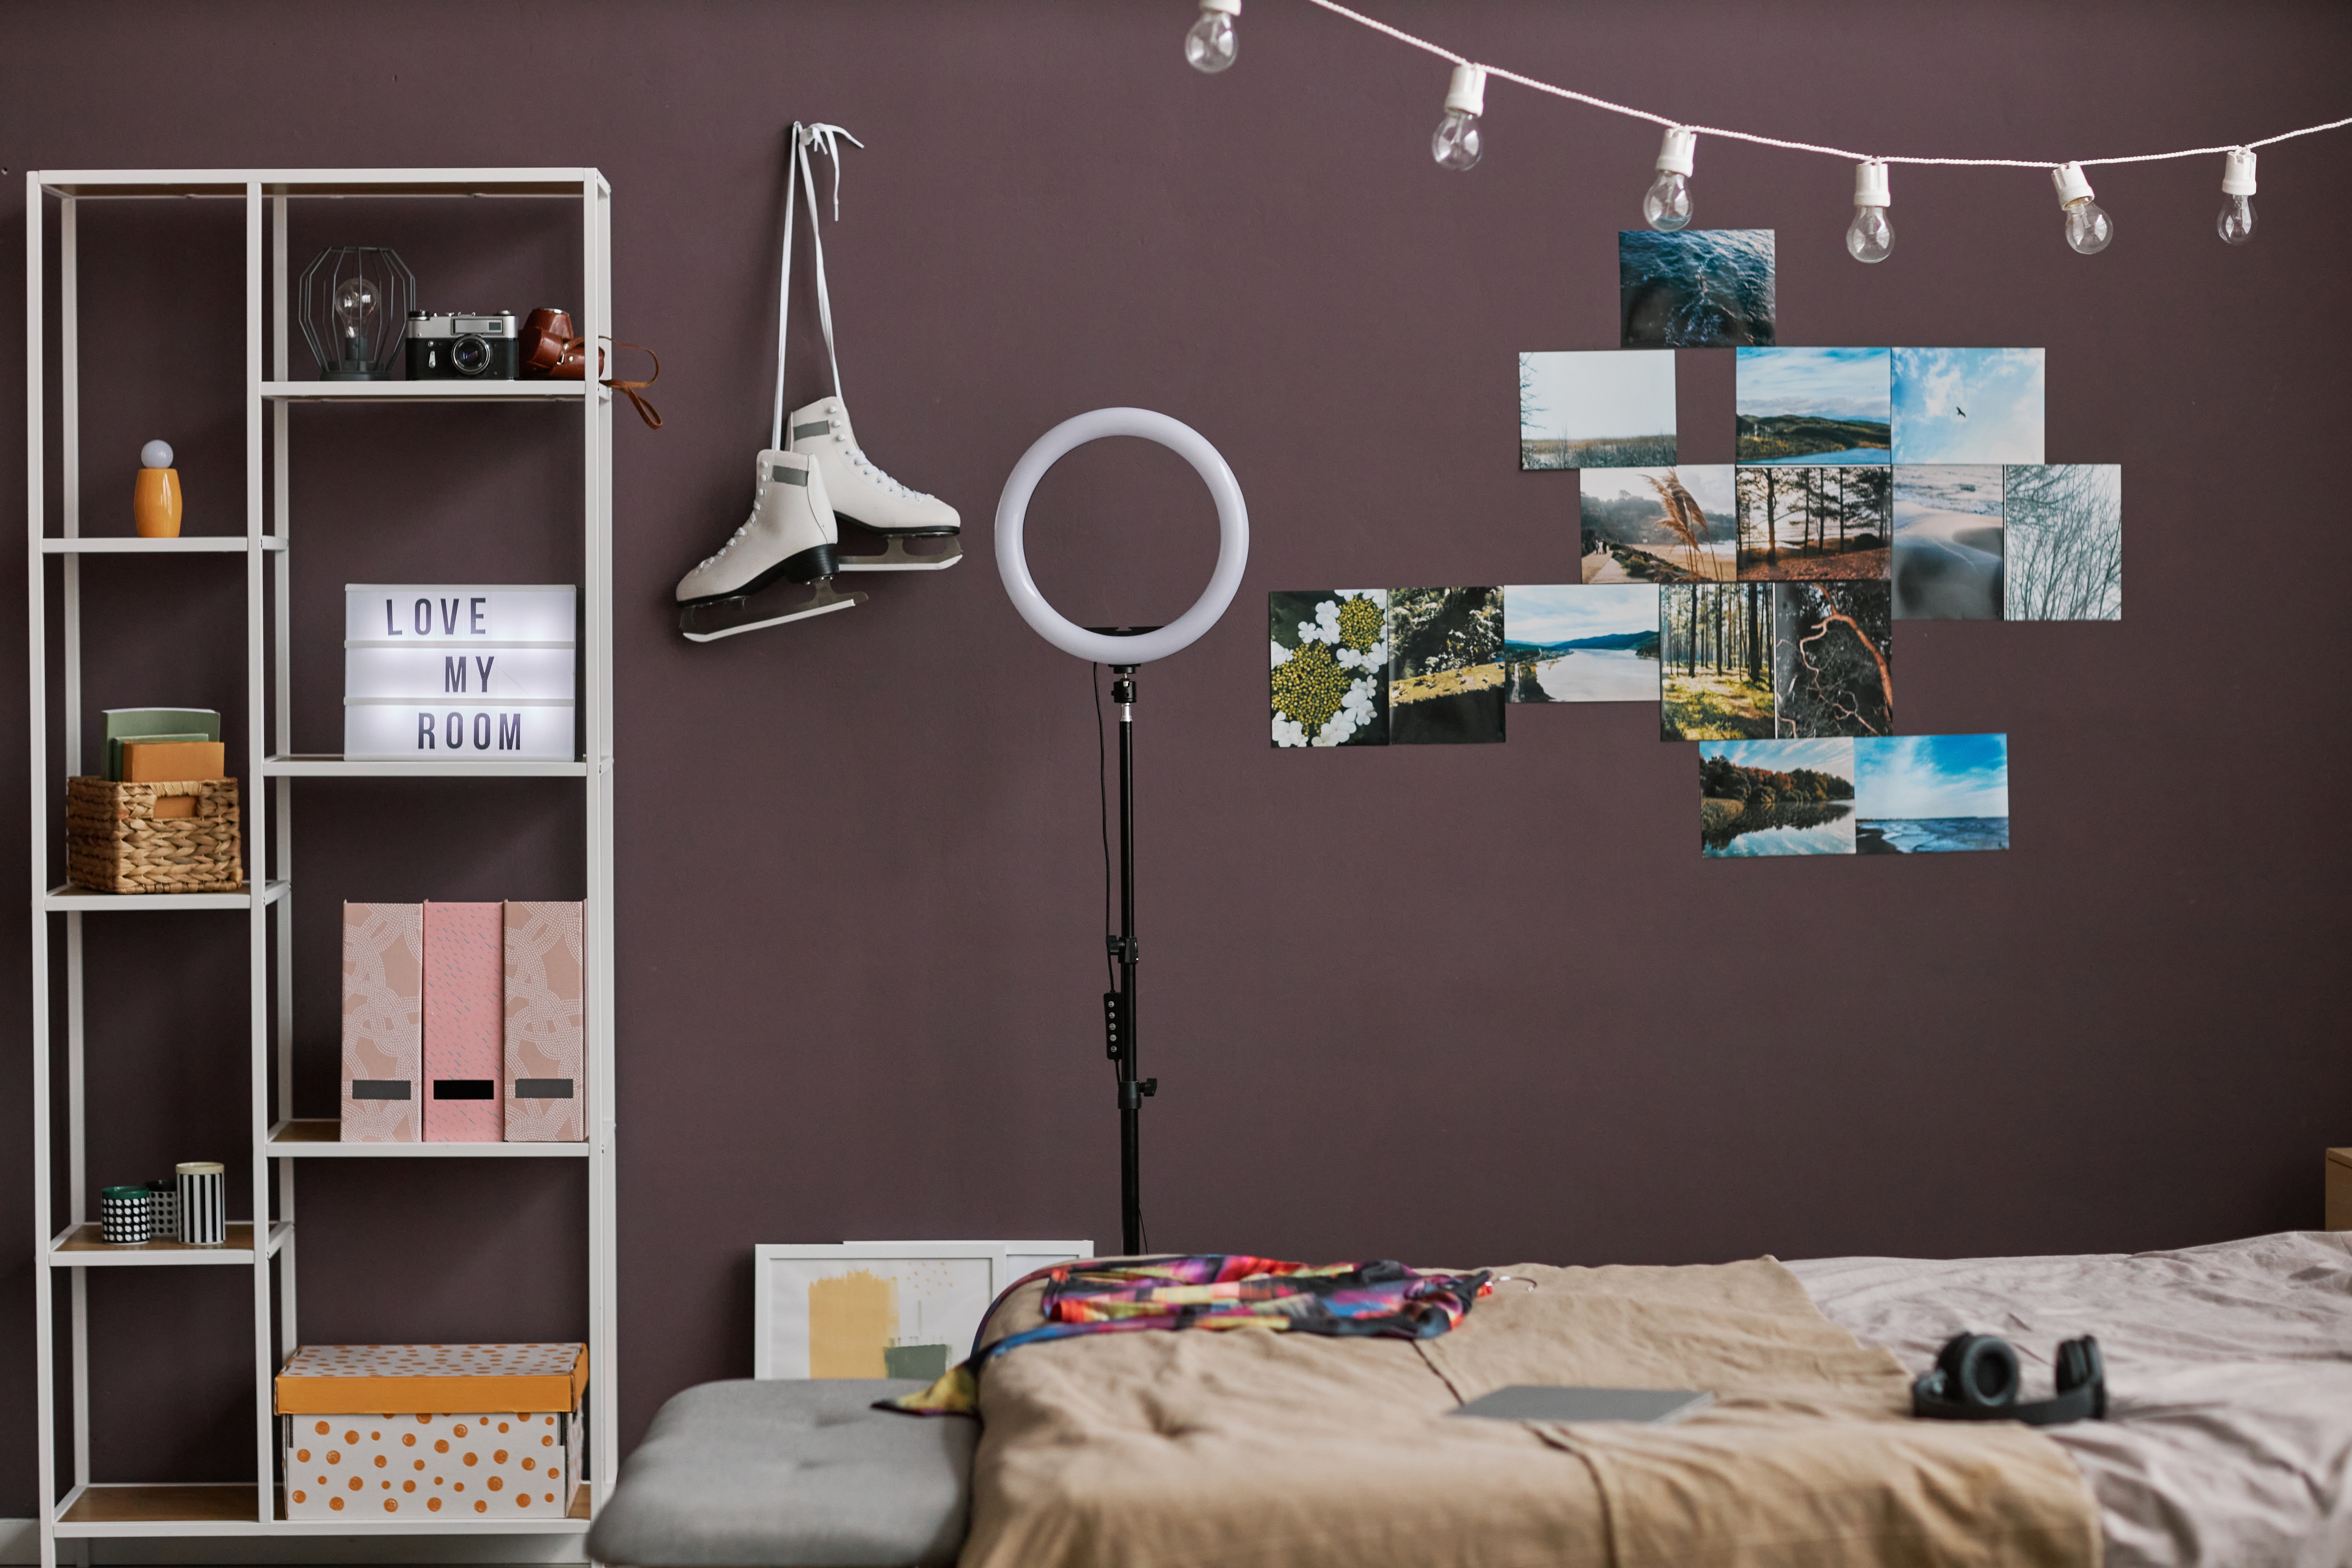 Teen room | Source: Shutterstock